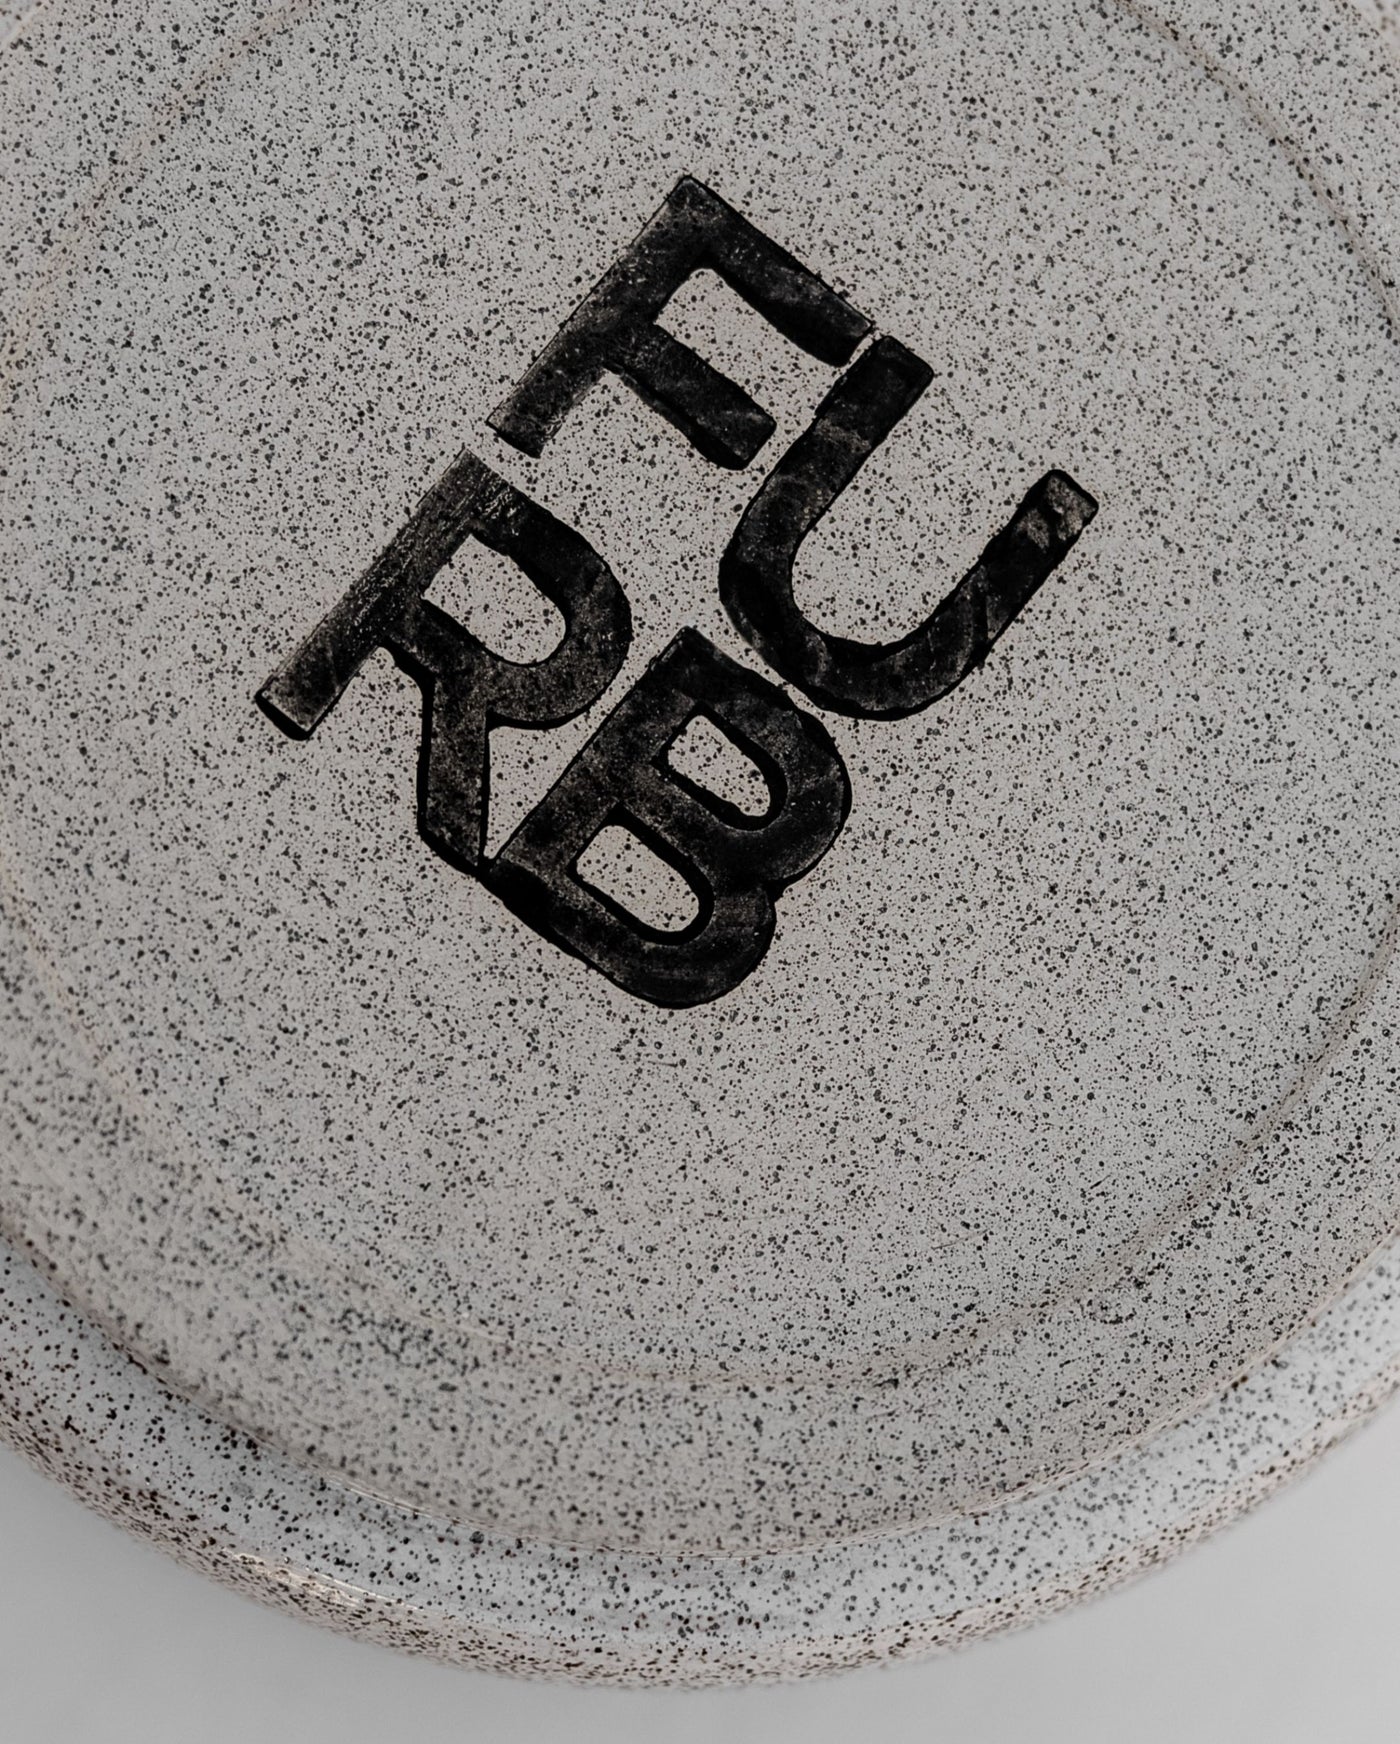 Fleck Off Speckled Handmade Bowl Set Product Image Detail